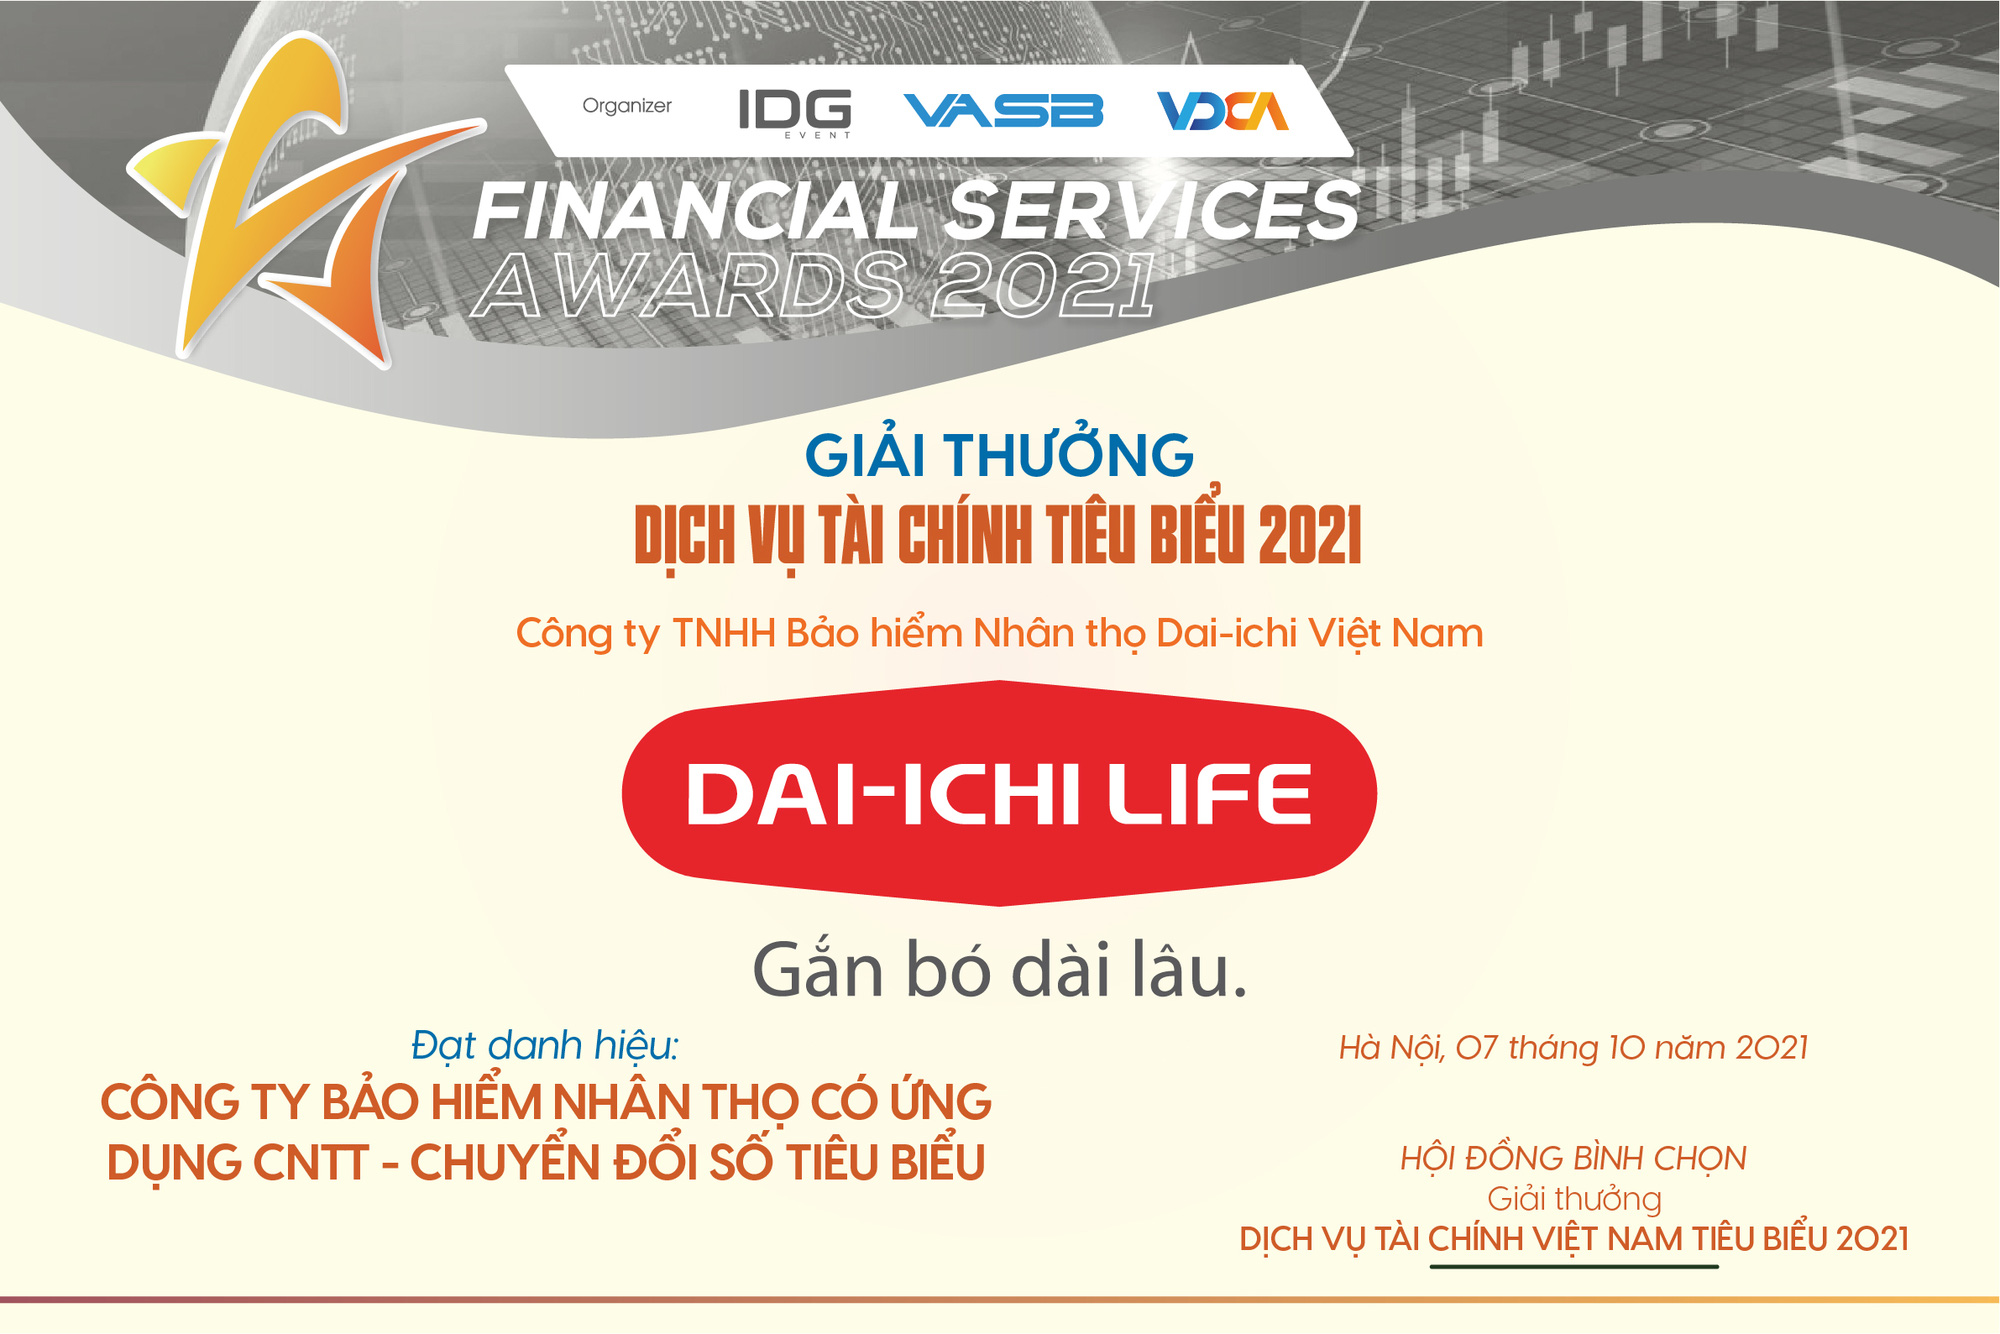 Ứng dụng công nghệ thông tin chuyển đổi số, Dai-ichi Life Việt Nam được vinh danh - Ảnh 1.